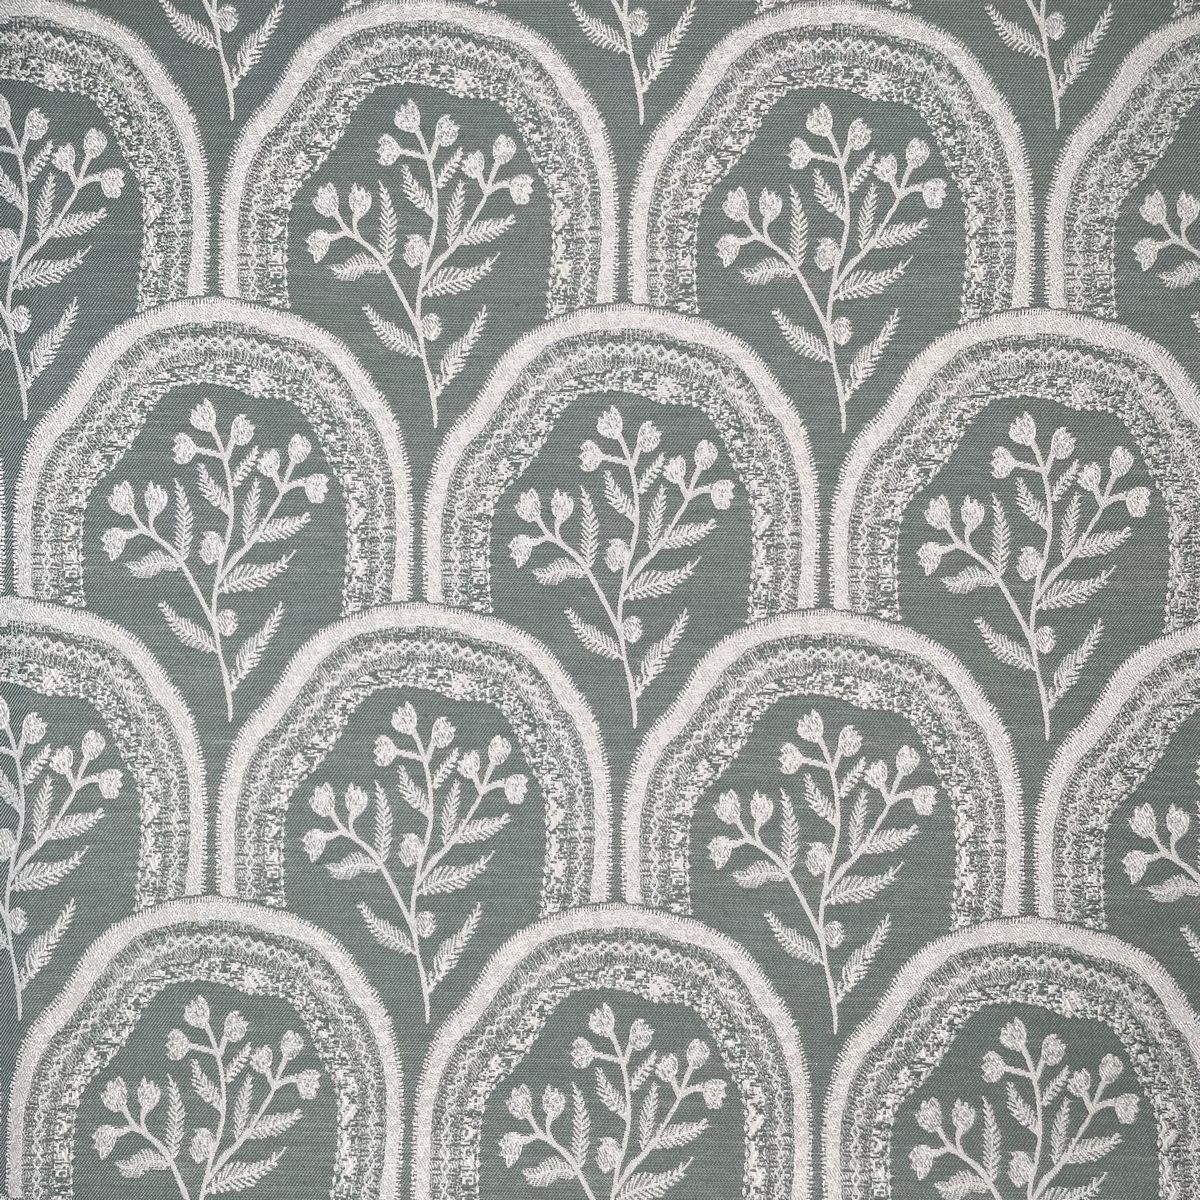 Hollybush Fern Fabric by Chatham Glyn